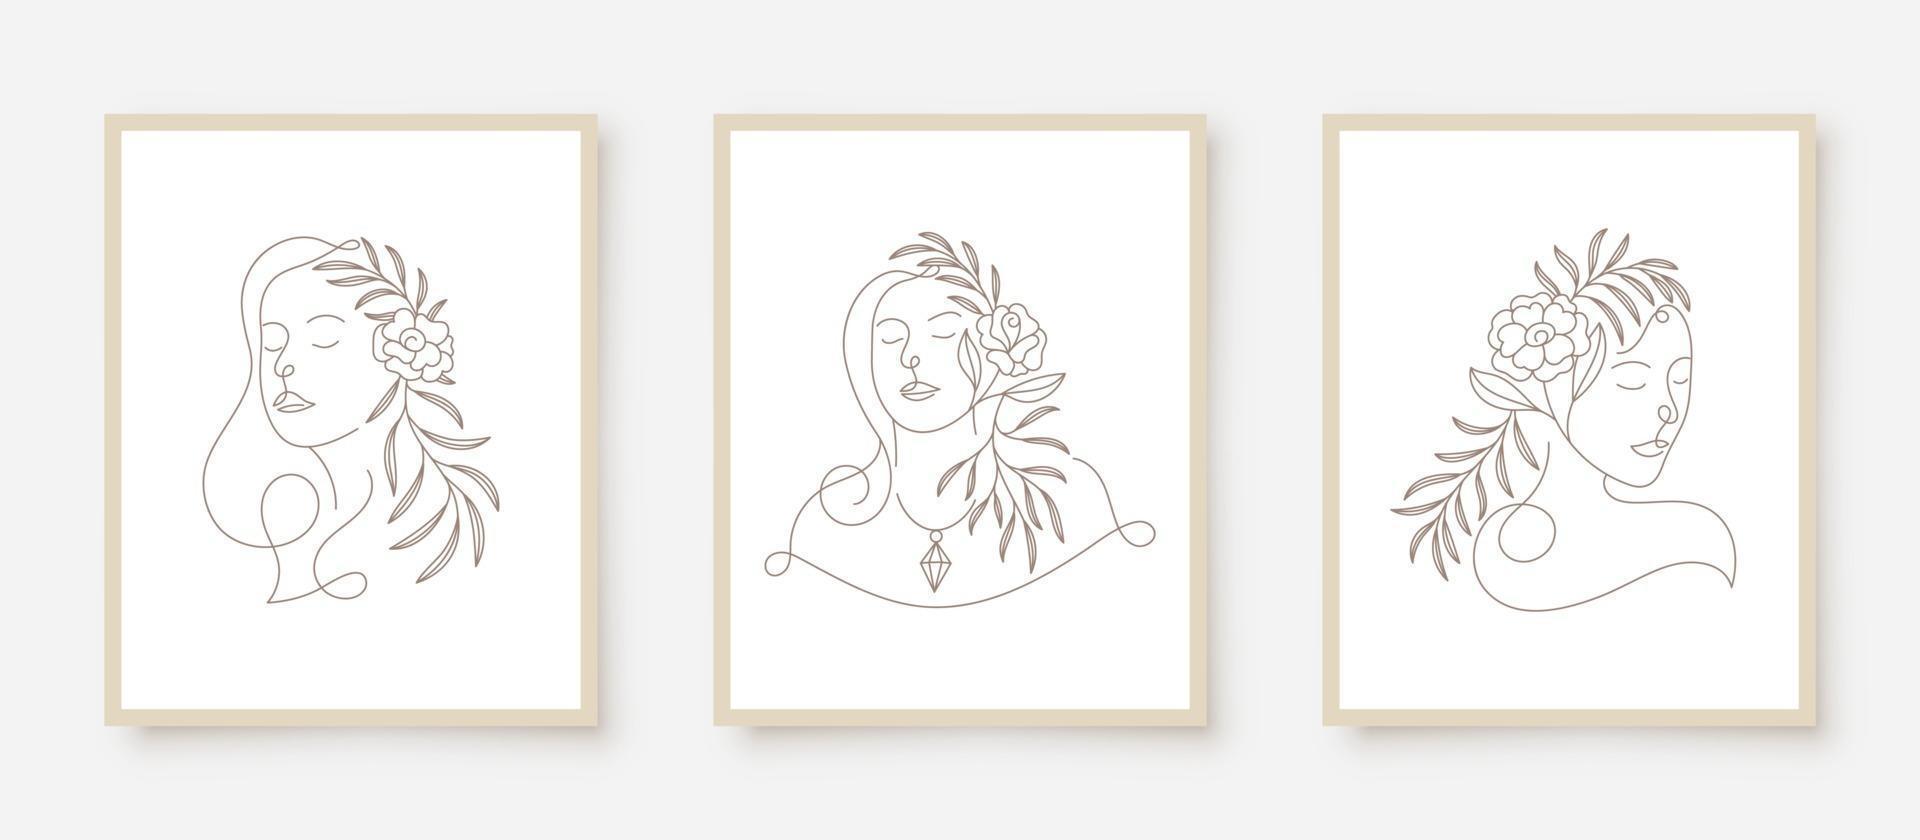 Rostos de mulher bonita em quadro floral de arte vetor